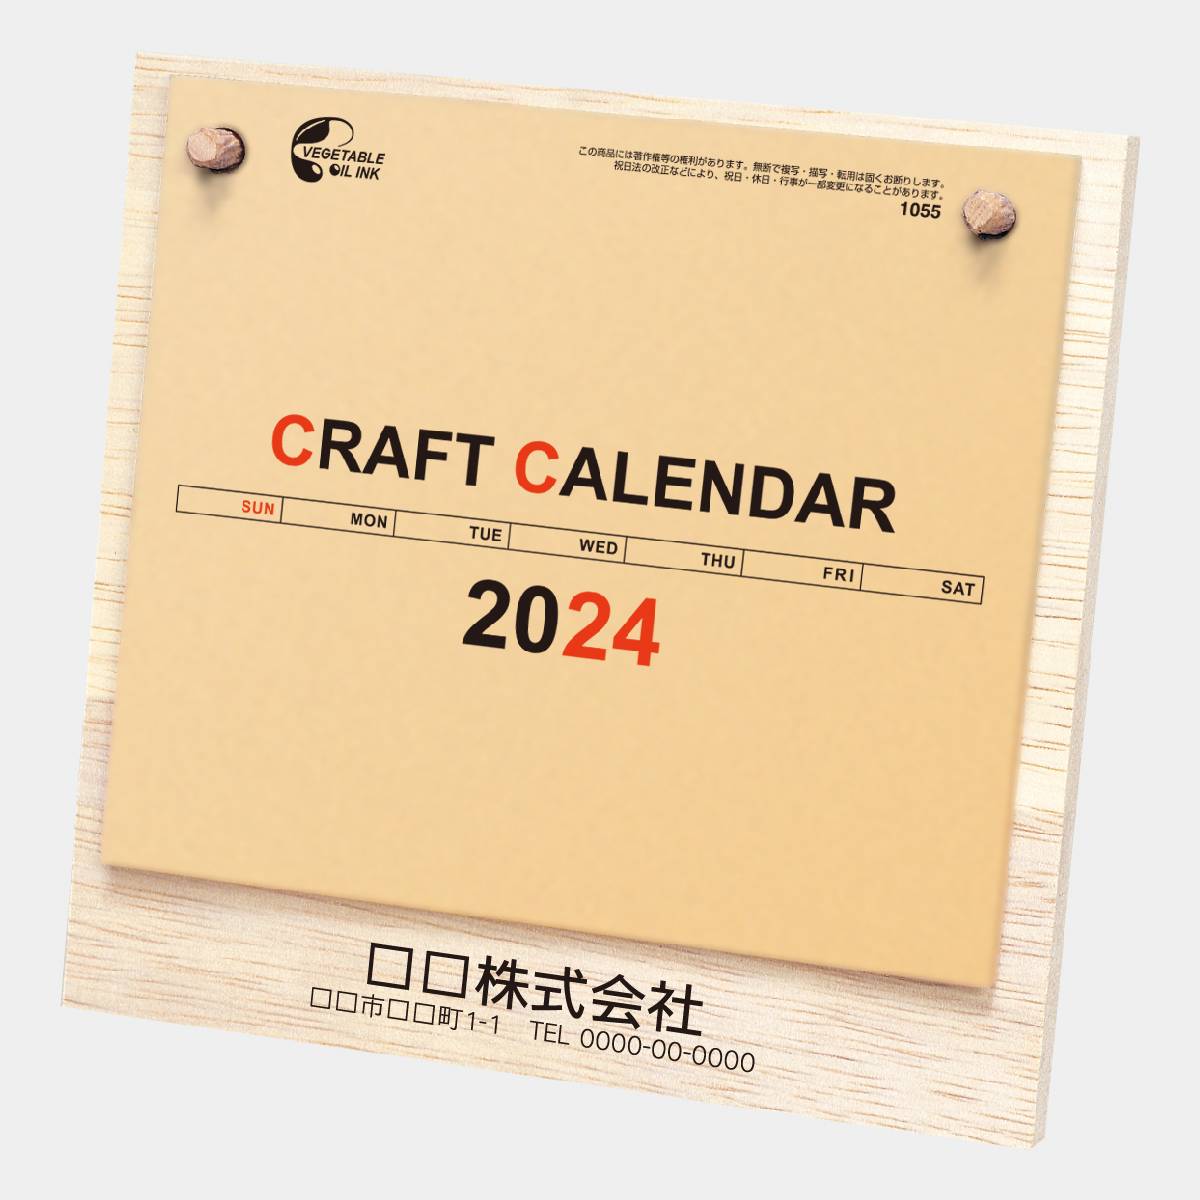 NB-1055 木のぬくもり(クラフトメモ) 2023年版の名入れカレンダーを 